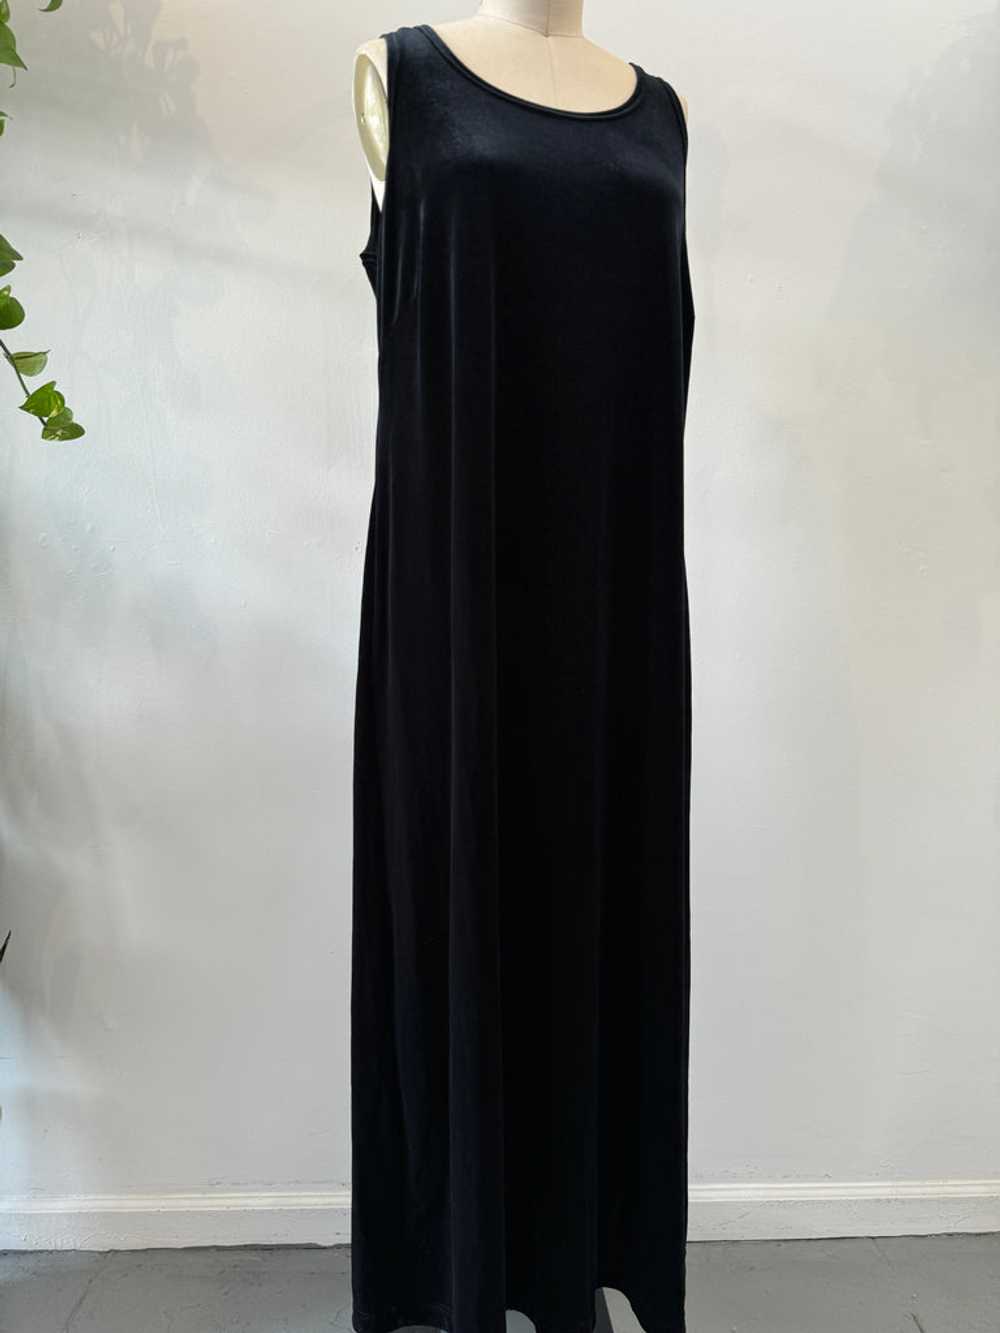 Vintage long velvet dress - image 3